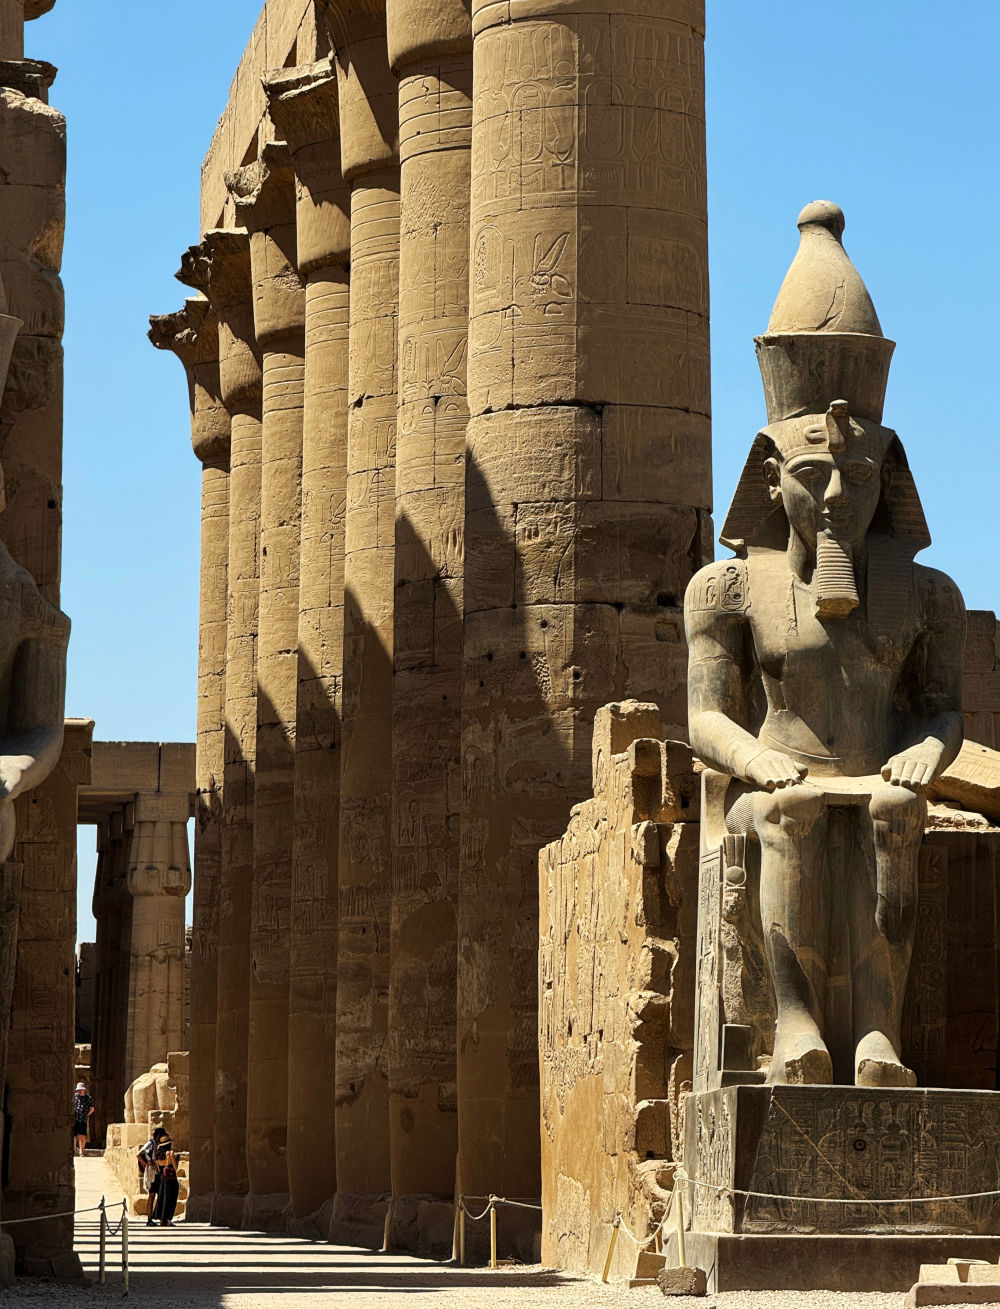 从卢克索到殷墟，探寻两大文明古迹遗址之美